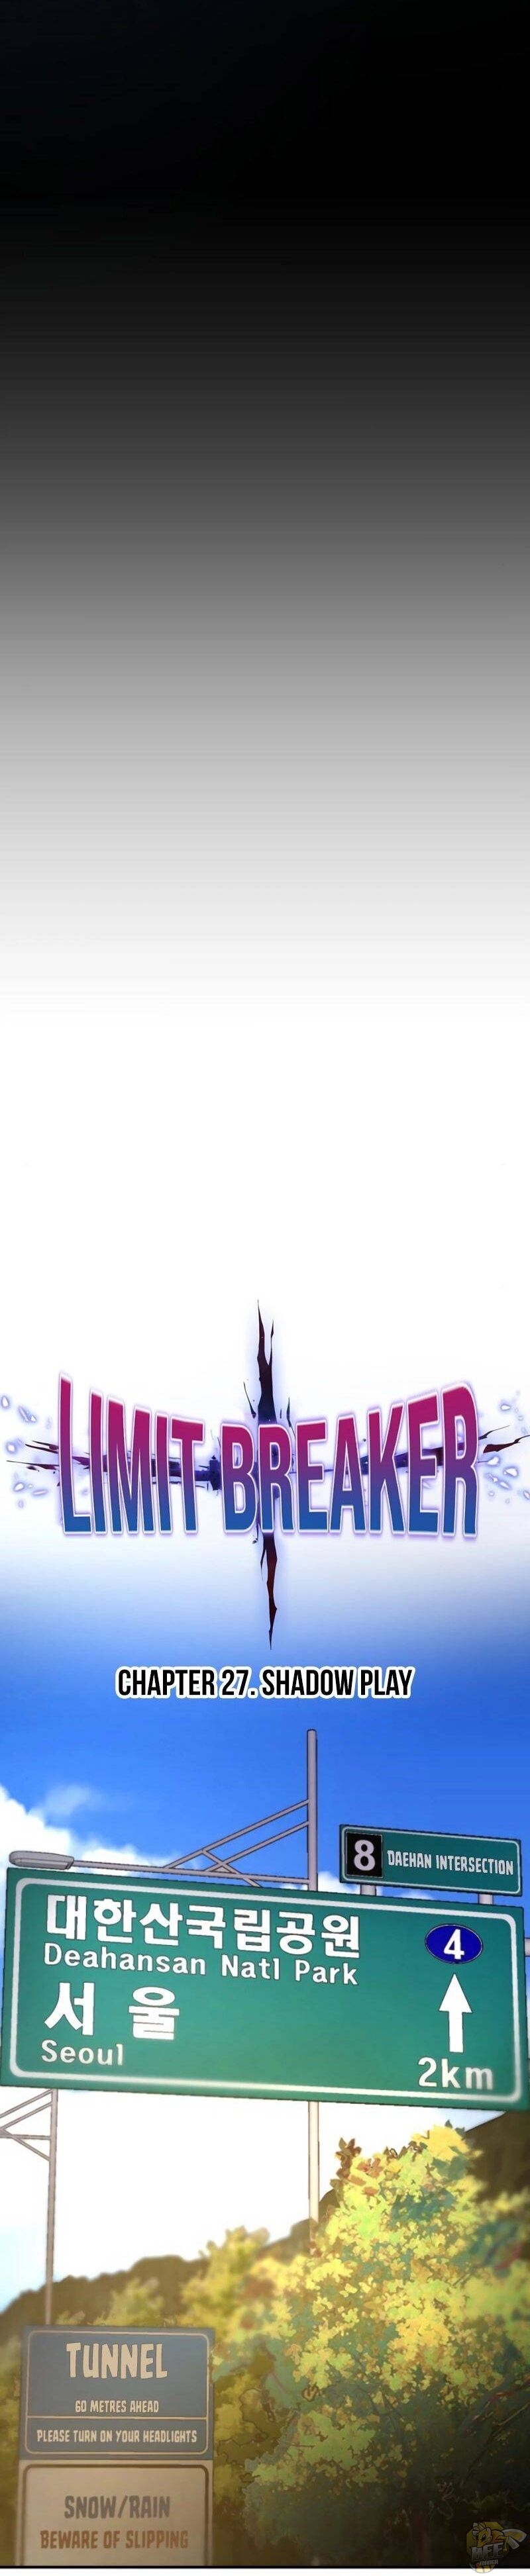 Limit Breaker Chapter 27 - MyToon.net